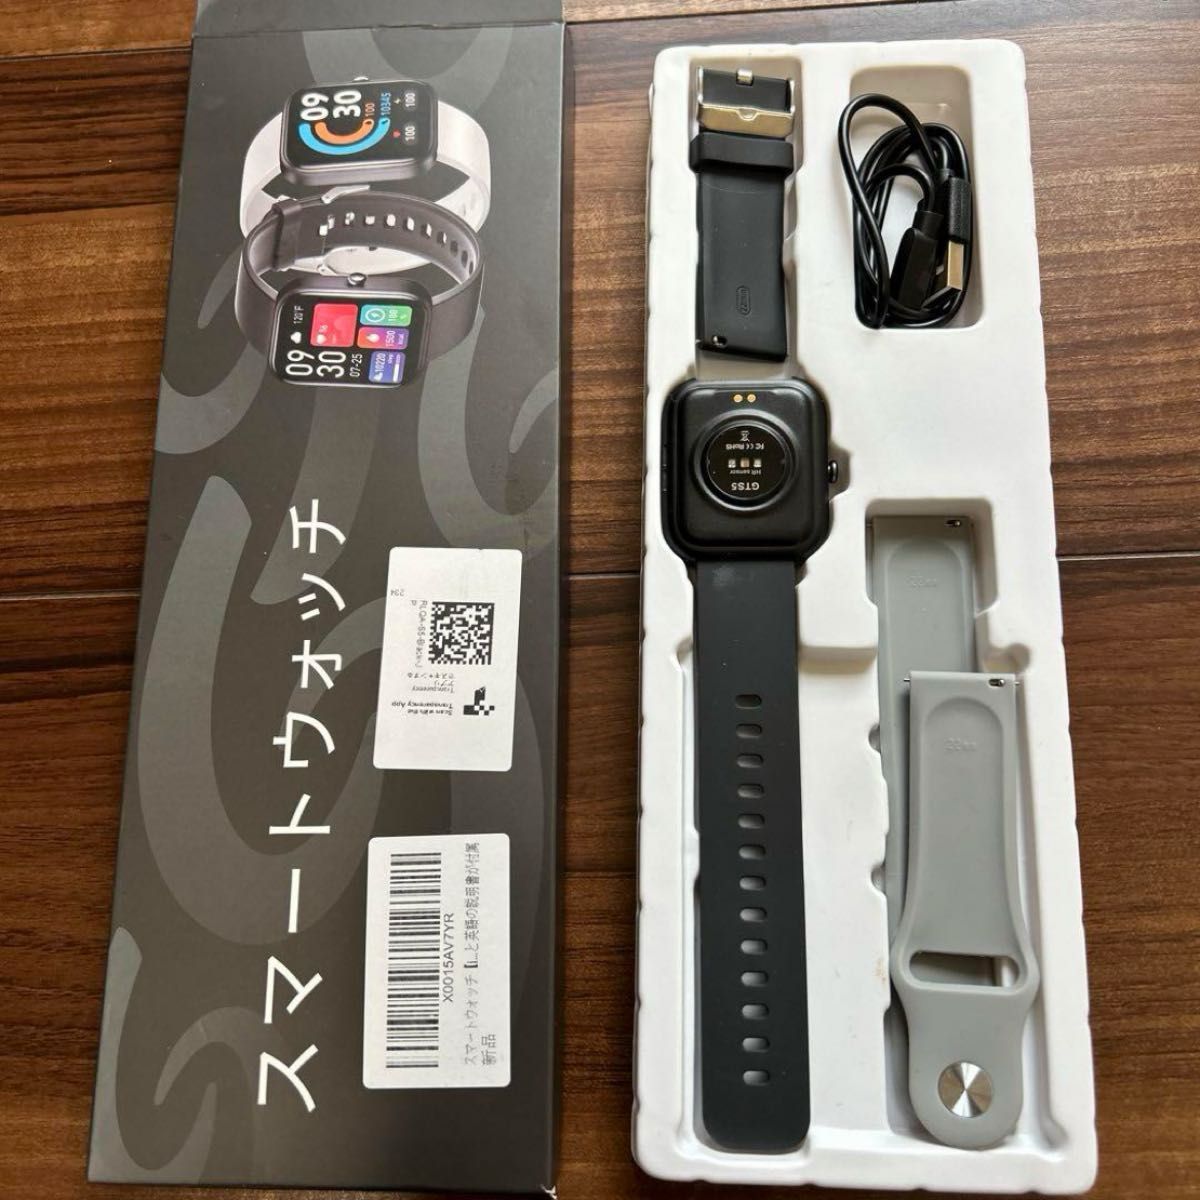 【大特価!!】スマートウォッチiPhone＆アンドロイド対応 Smart Watch 腕時計